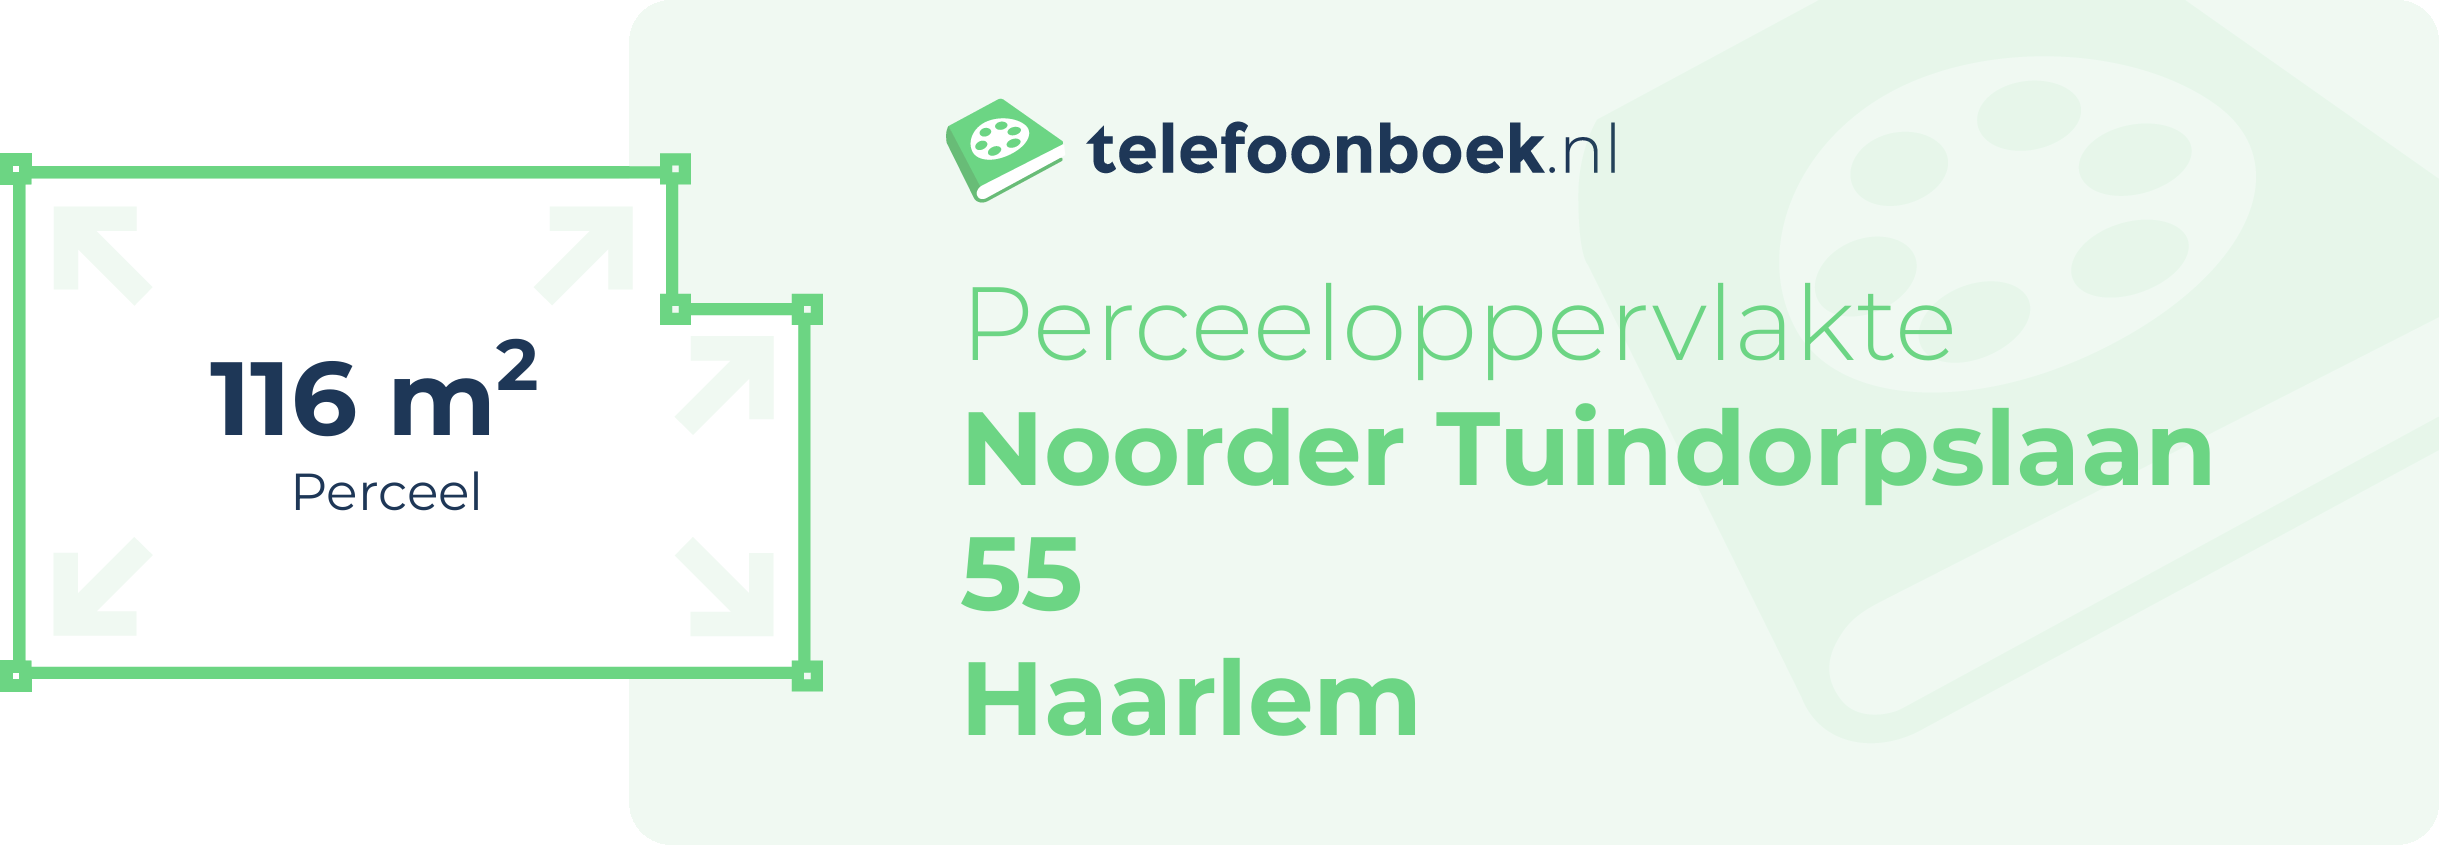 Perceeloppervlakte Noorder Tuindorpslaan 55 Haarlem